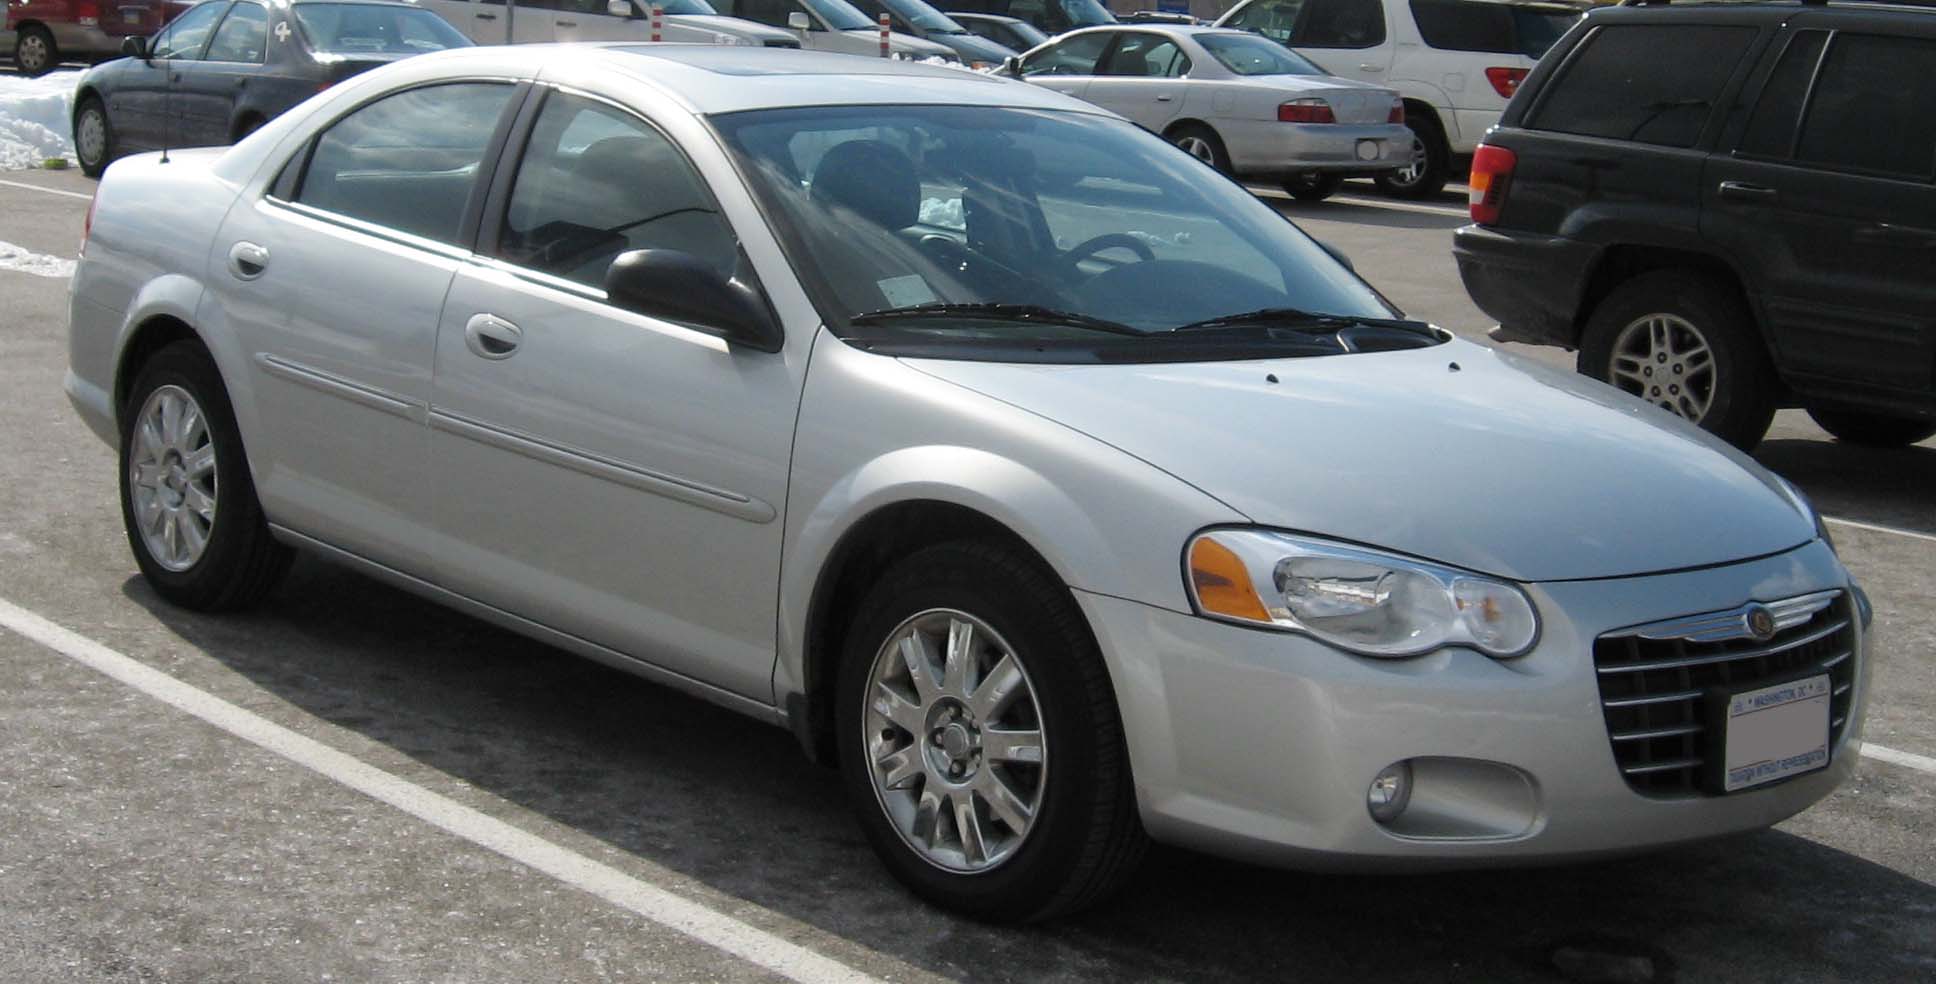 File:2004-2006 Chrysler Sebring Sedan.jpg - Wikimedia Commons